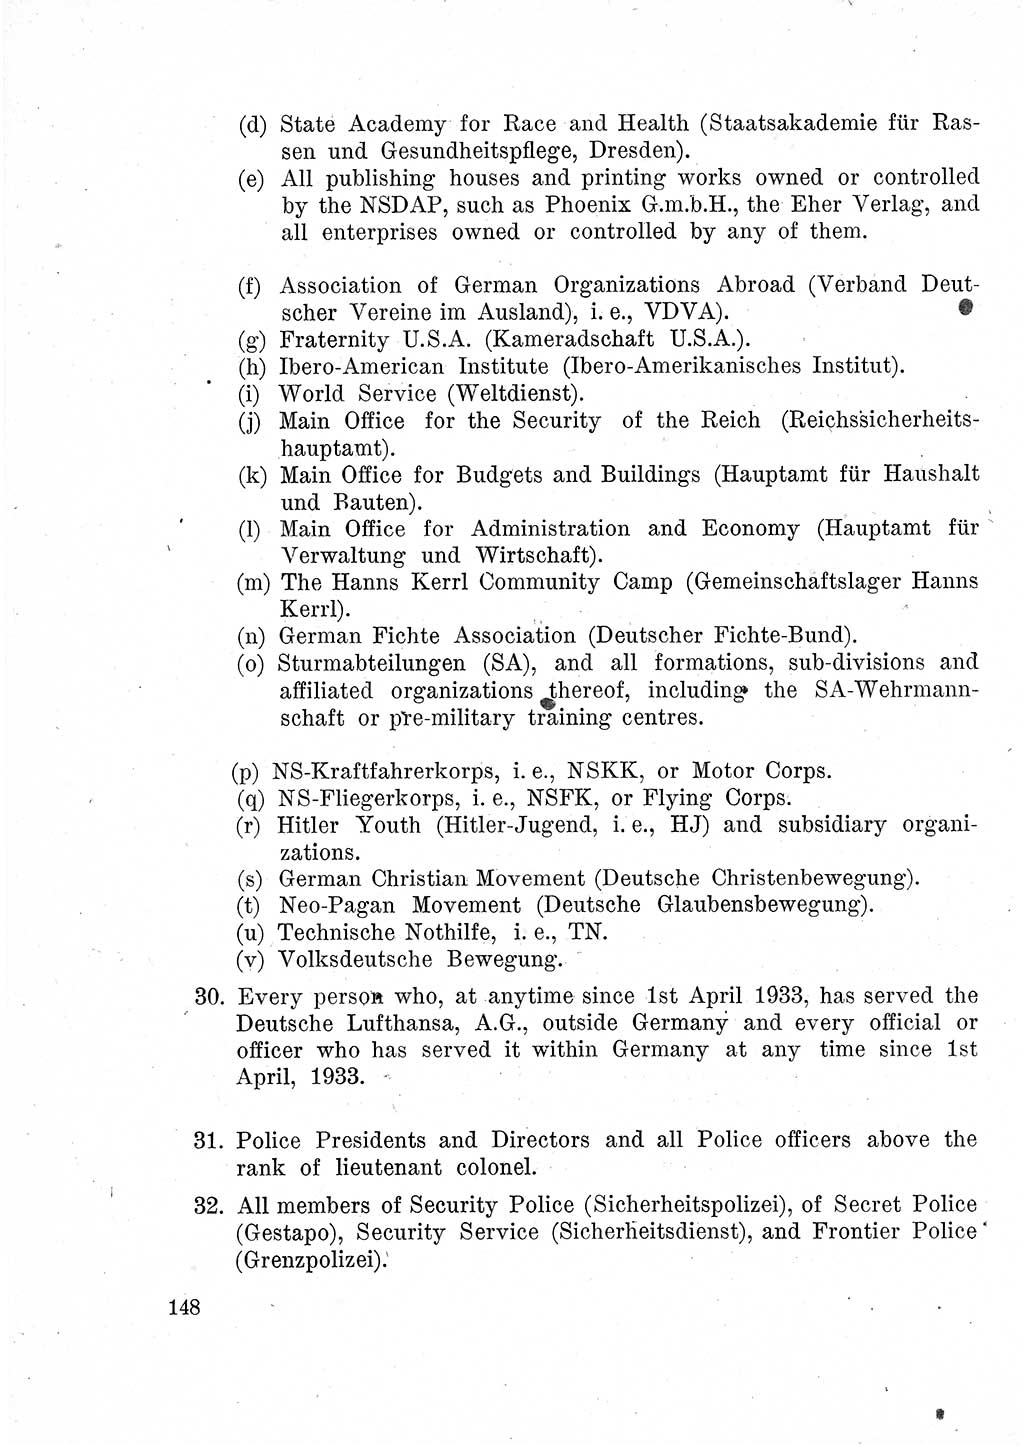 Das Recht der Besatzungsmacht (Deutschland), Proklamationen, Deklerationen, Verordnungen, Gesetze und Bekanntmachungen 1947, Seite 148 (R. Bes. Dtl. 1947, S. 148)